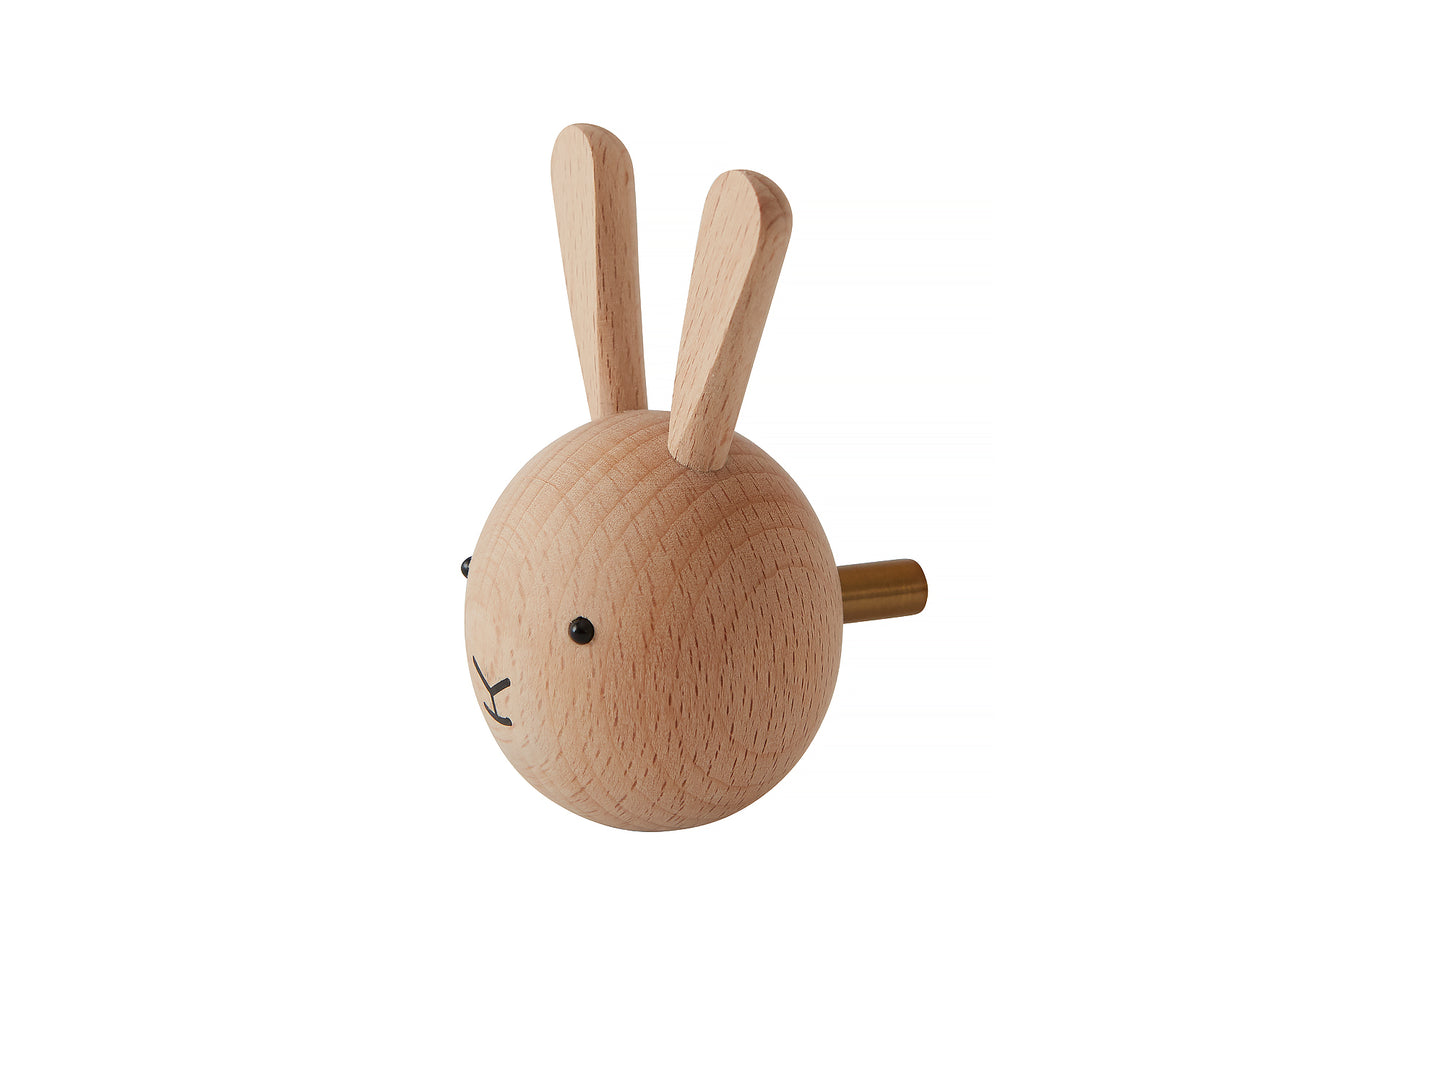 Mini Wall Hooks - Rabbit by OYOY